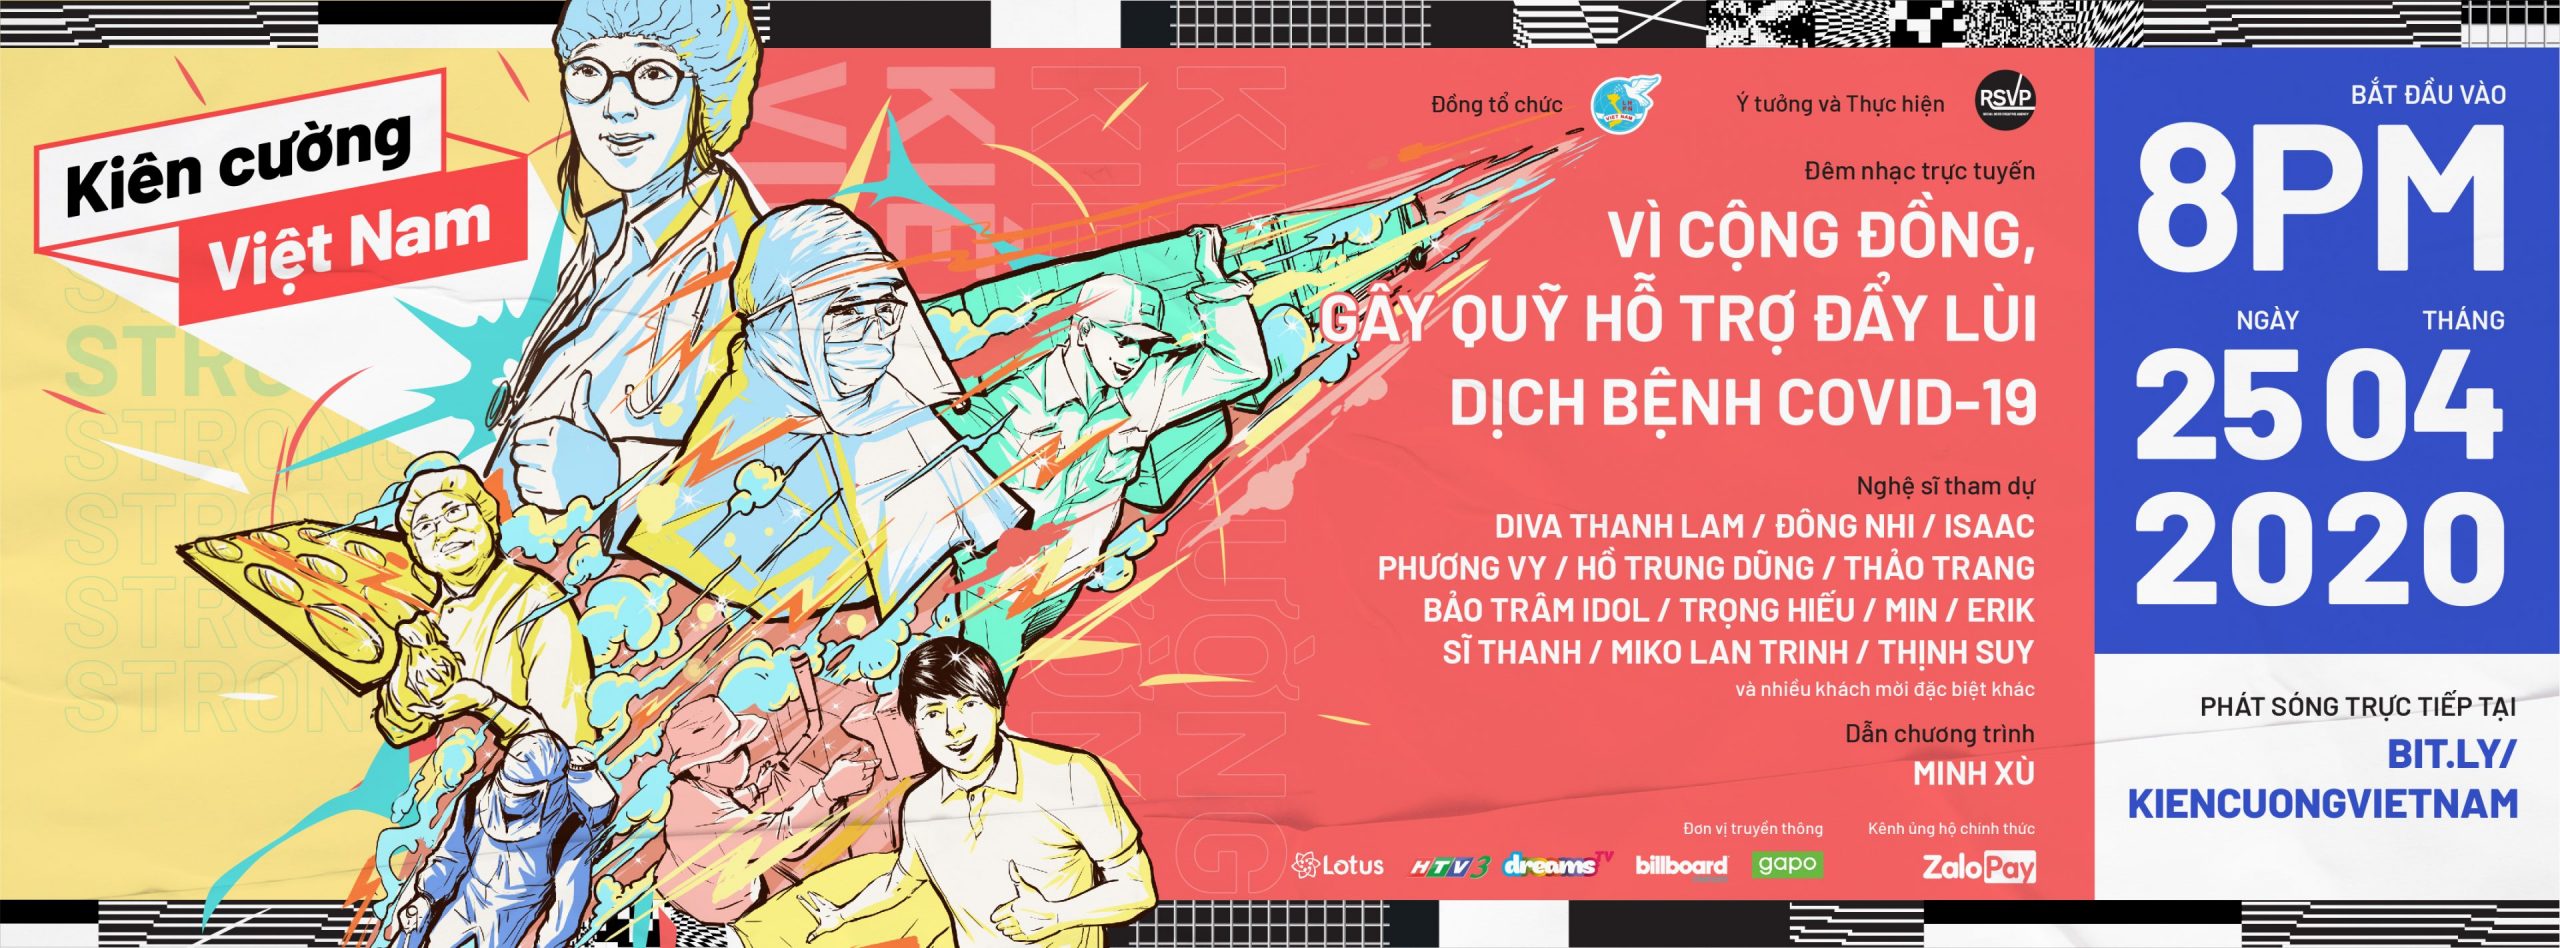 Gần 20 nghệ sĩ, ca sĩ hàng đầu Việt Nam tham gia đêm nhạc trực tuyến “Kiên Cường Việt Nam”